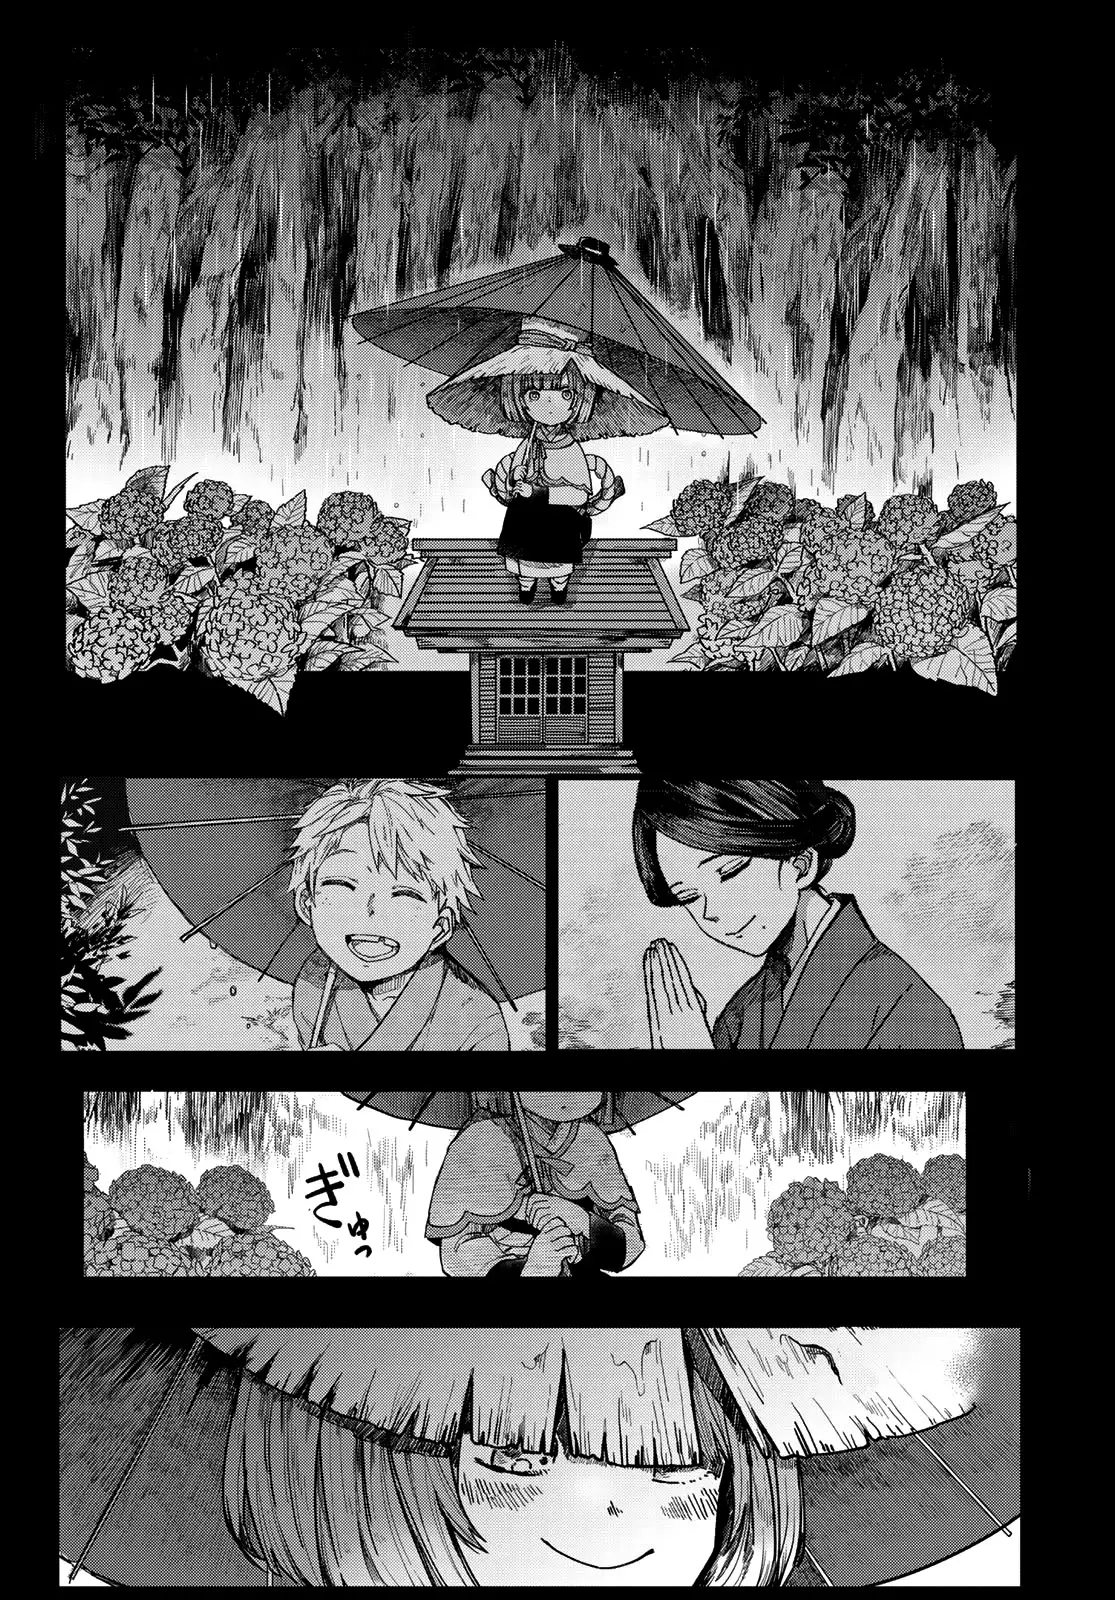 Kyuuki No Adabana - 1 page 19-9e2f4654